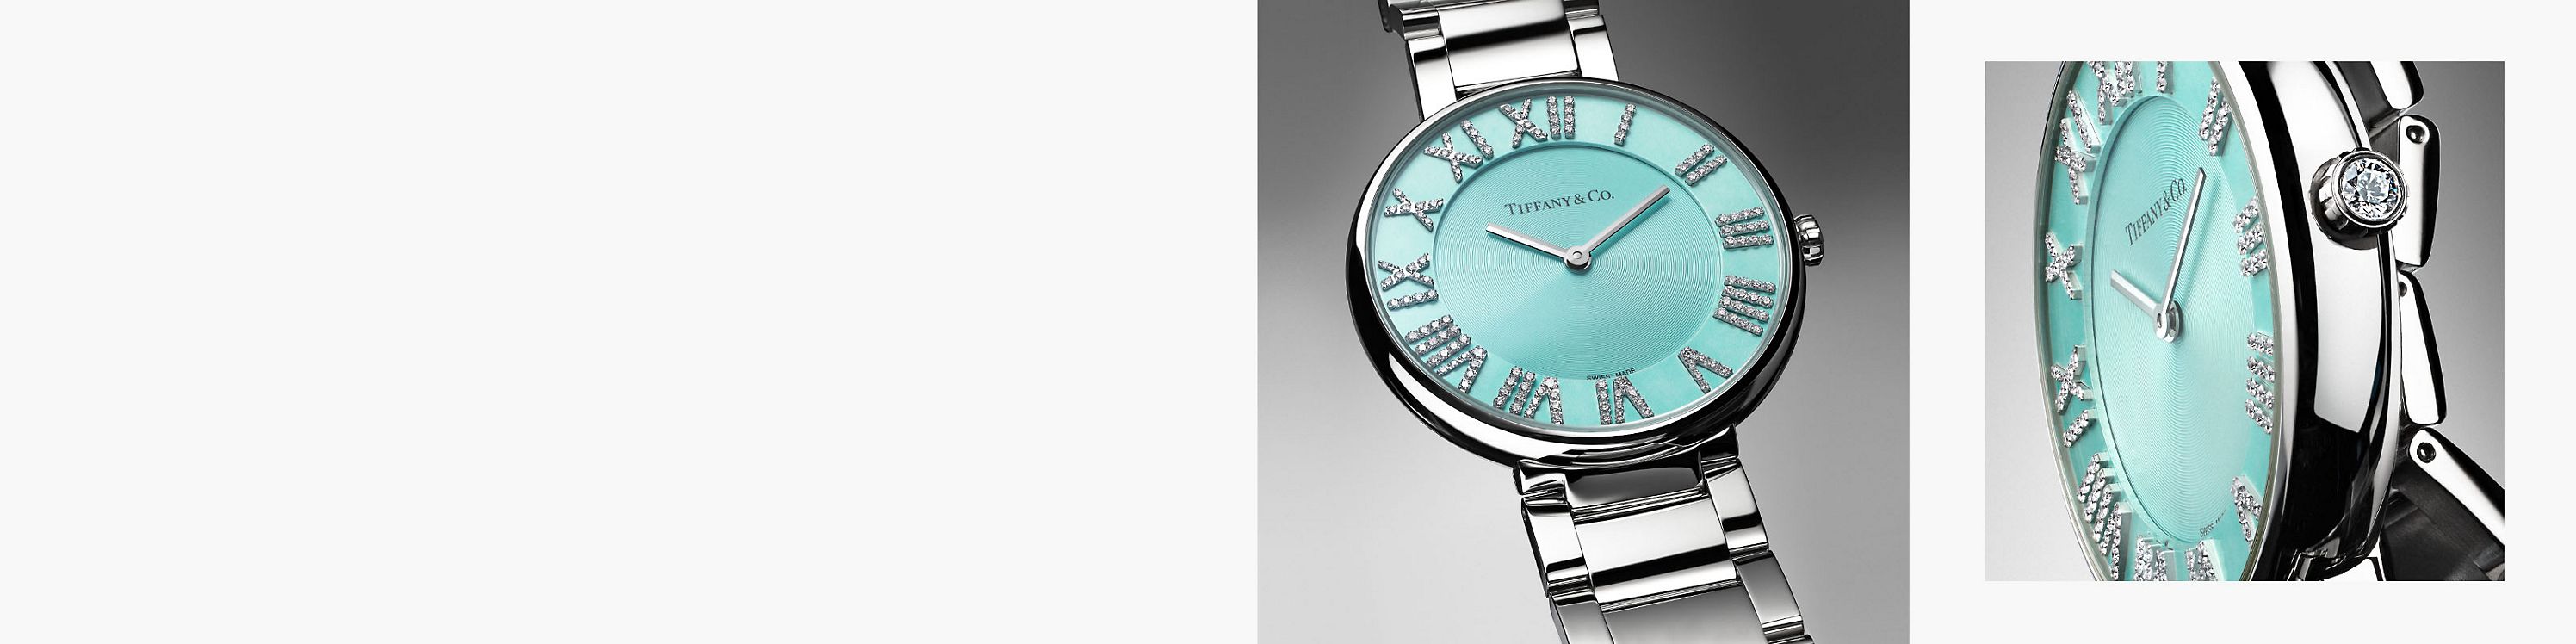 Conheça os relógios Tiffany Atlas® Tiffany & Co.